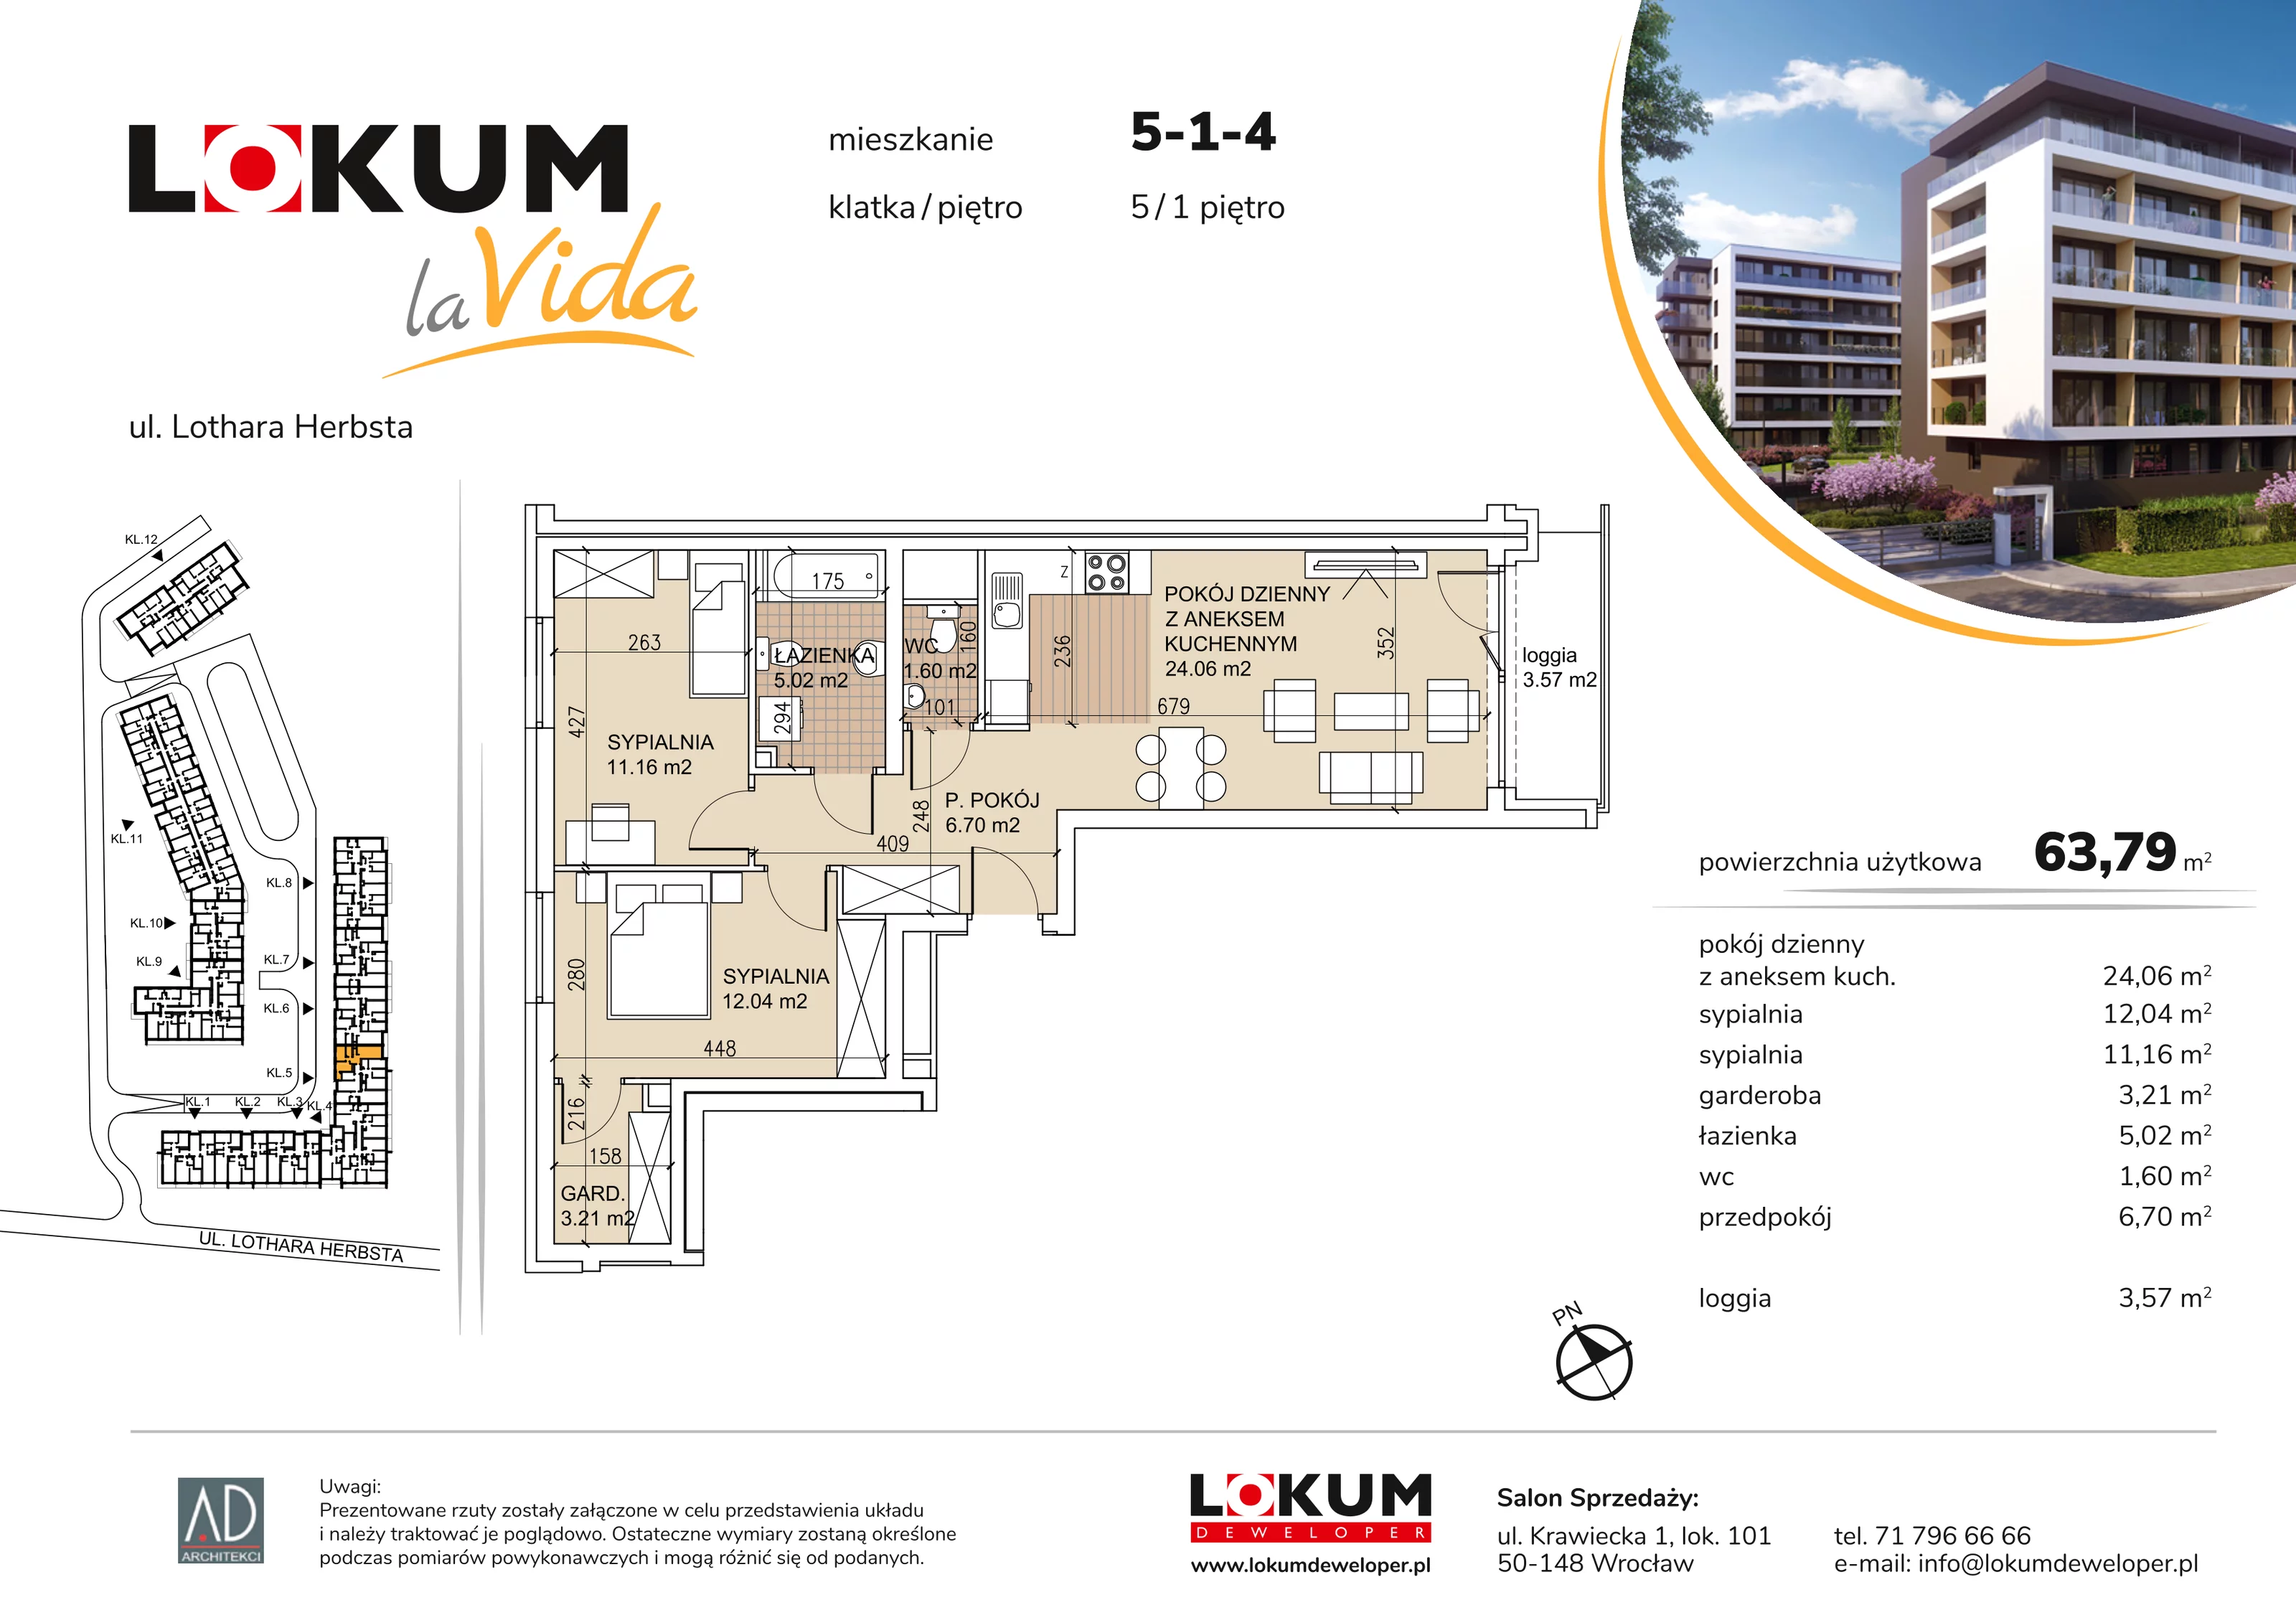 Mieszkanie 63,79 m², piętro 1, oferta nr 5-1-4, Lokum la Vida, Wrocław, Sołtysowice, ul. Lothara Herbsta